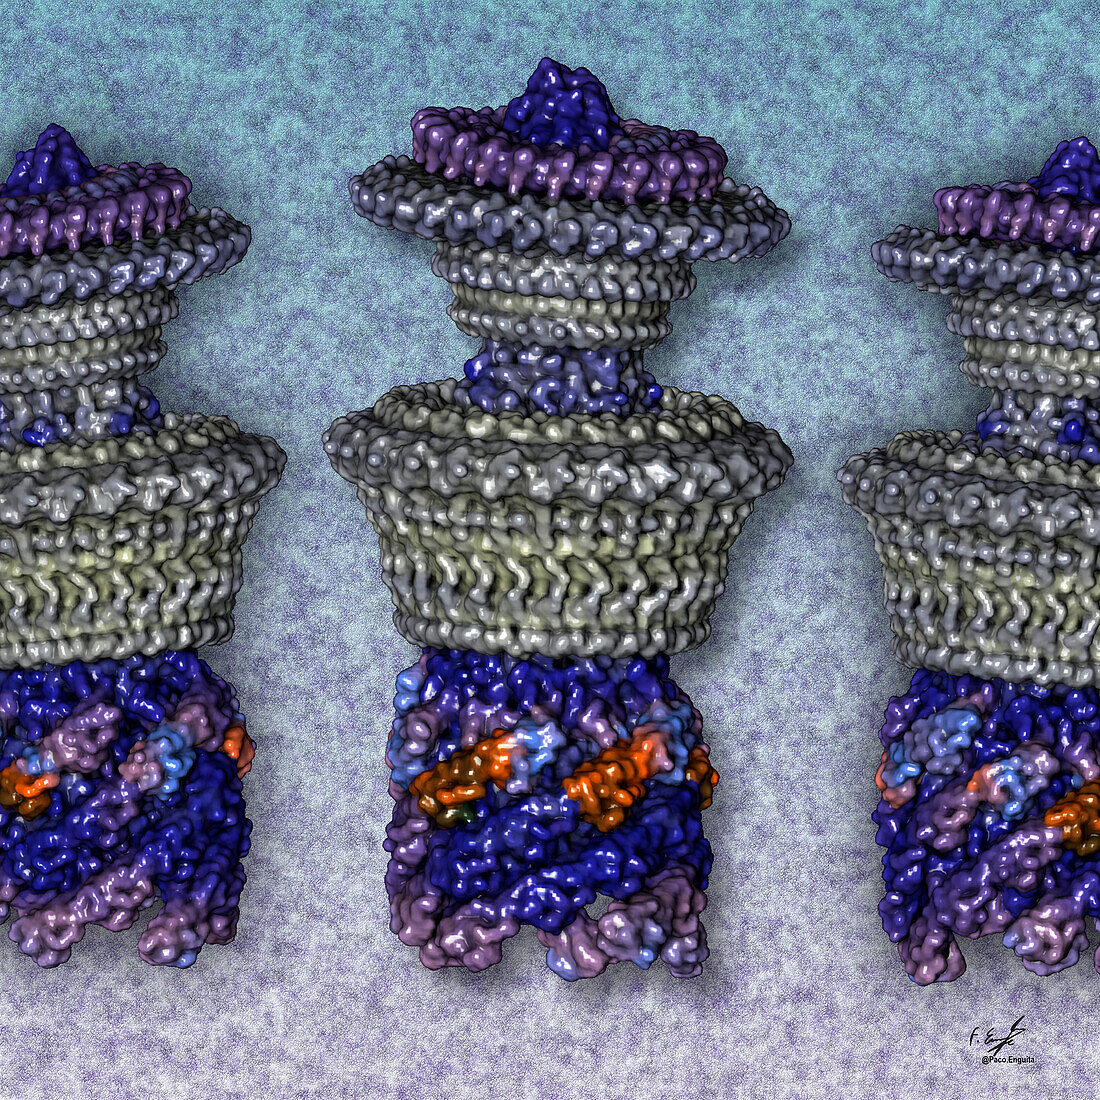 Bacterial flagellar motor-hooks, illustration